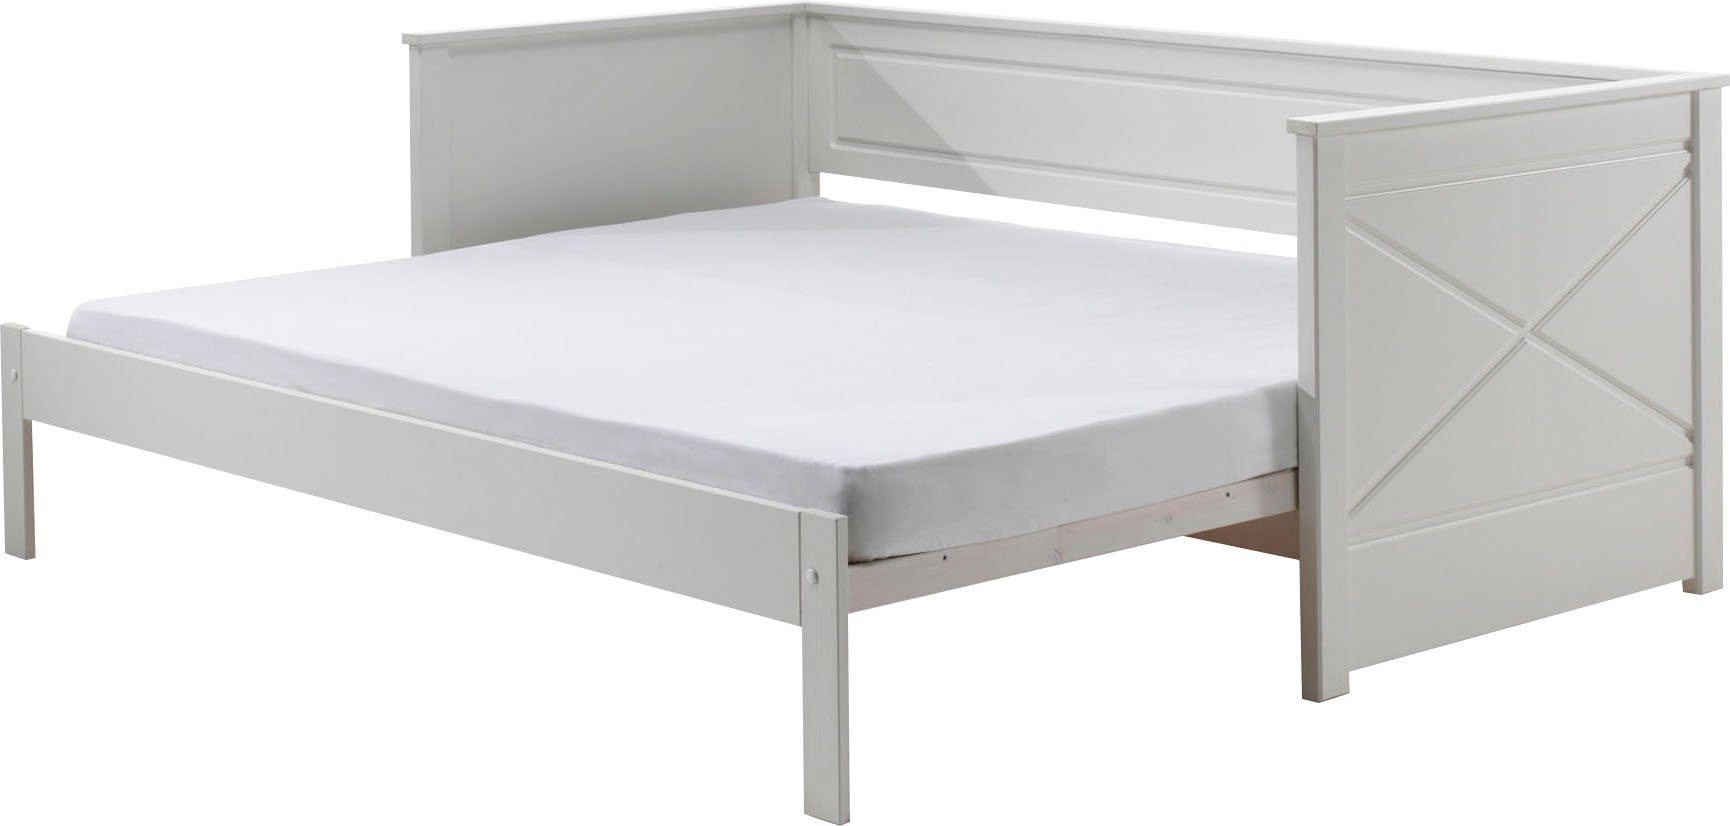 Vipack Bett Vipack Pino, ausziehen cm, LF Ausf. auf Weiß cm, Kojenbett 90x200 lackiert 180x200